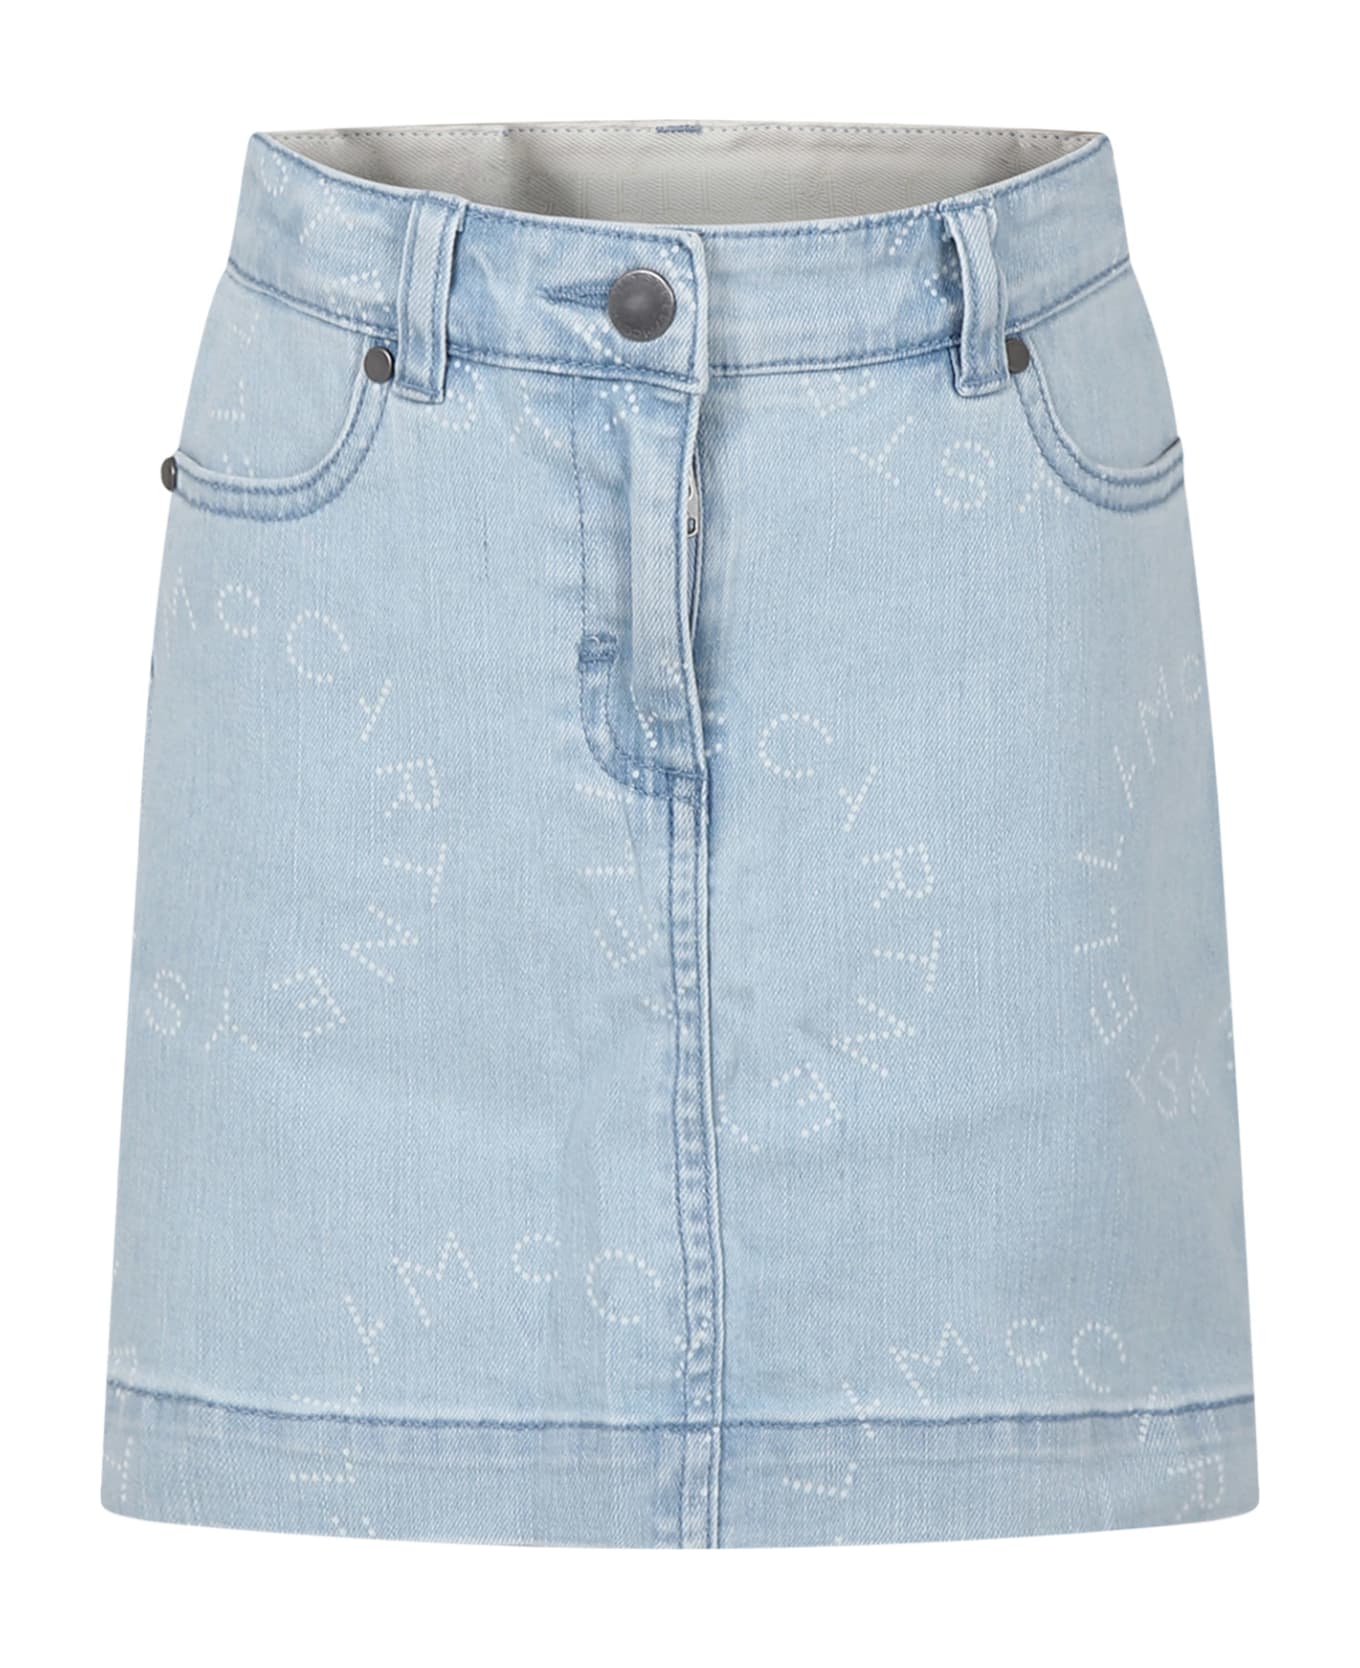 Stella McCartney Kids Denim Skirt For Girl With Logo - Denim